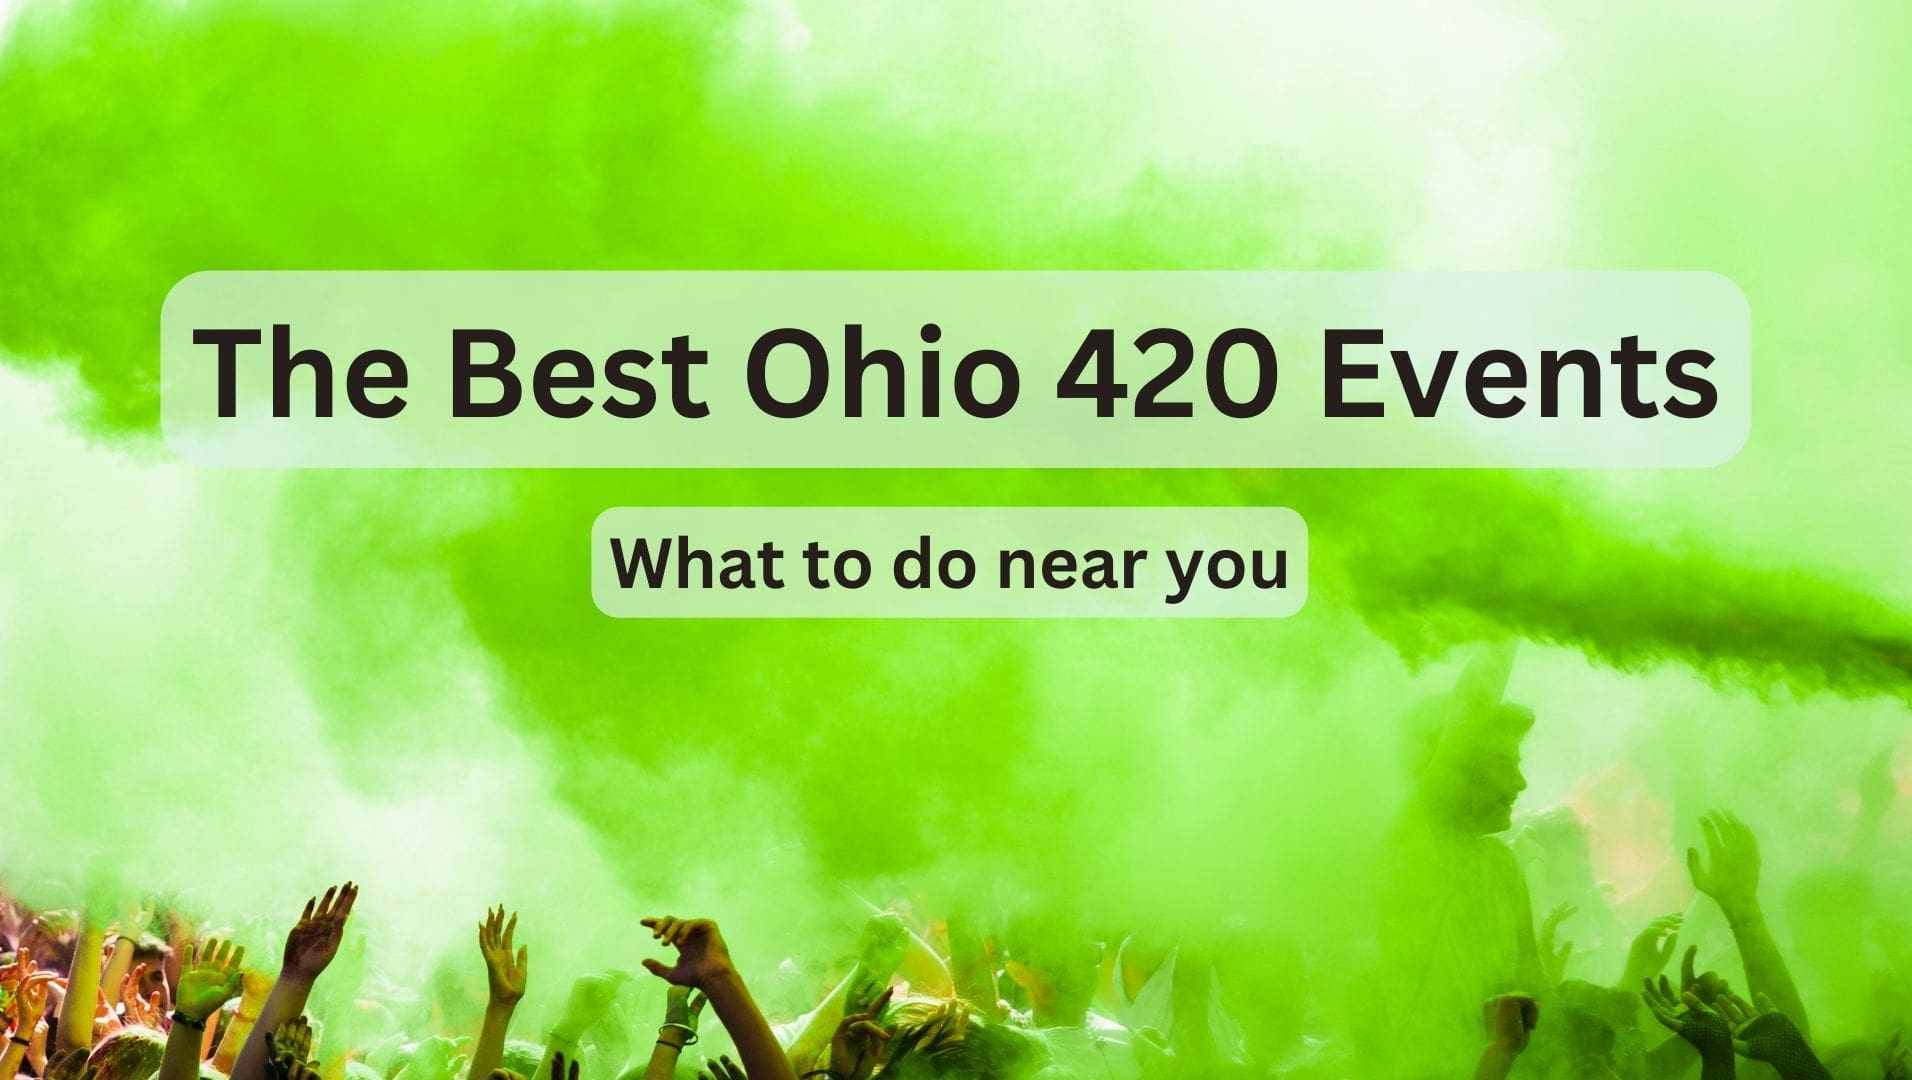 Ohio 420 Events